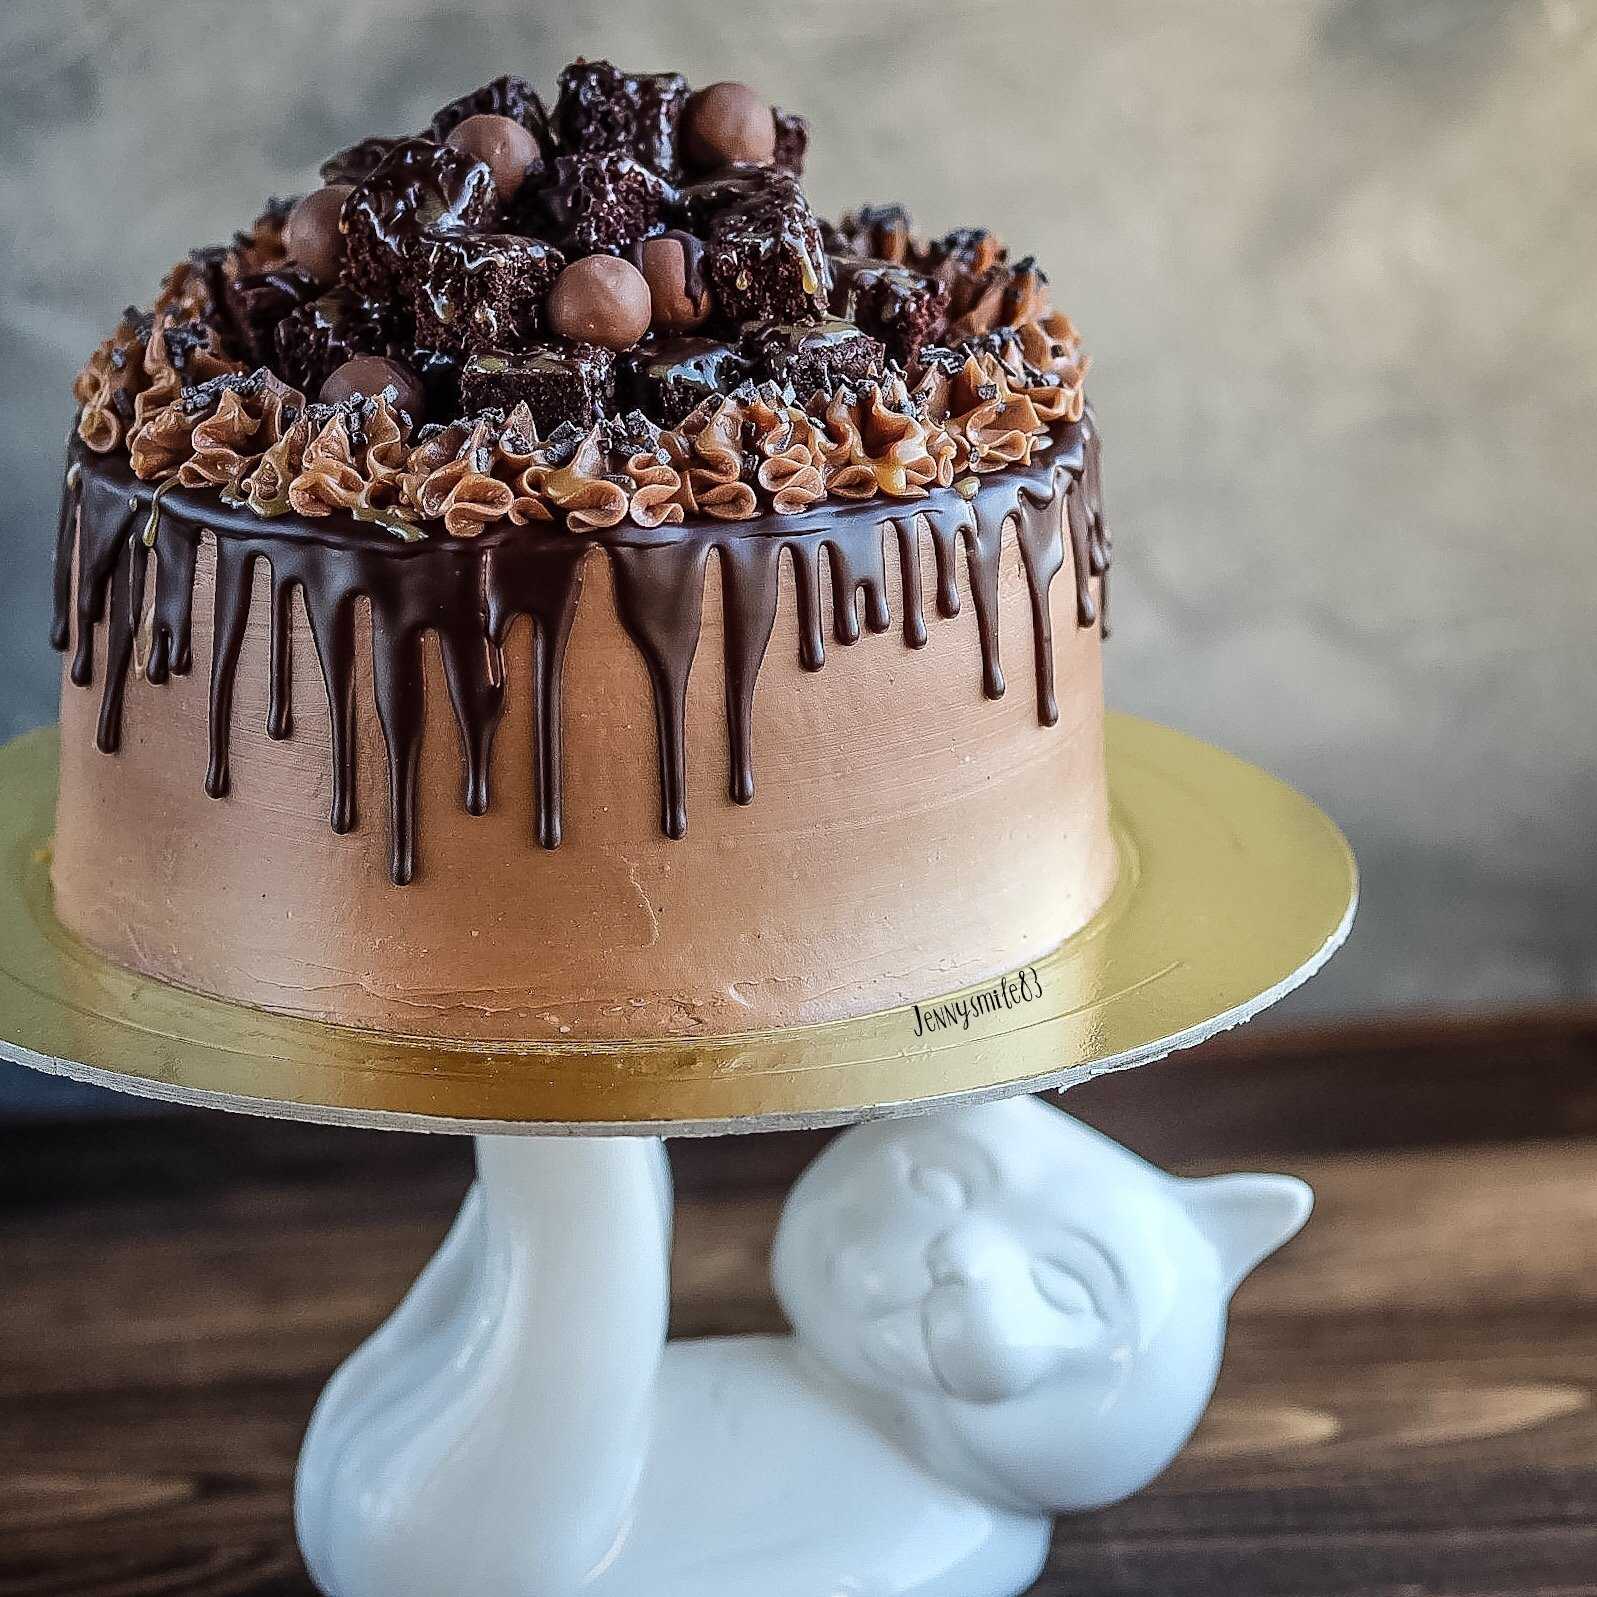 Как приготовить шоколадную глазурь для торта в домашних условиях или ганаш для выравнивания торта под глазурь